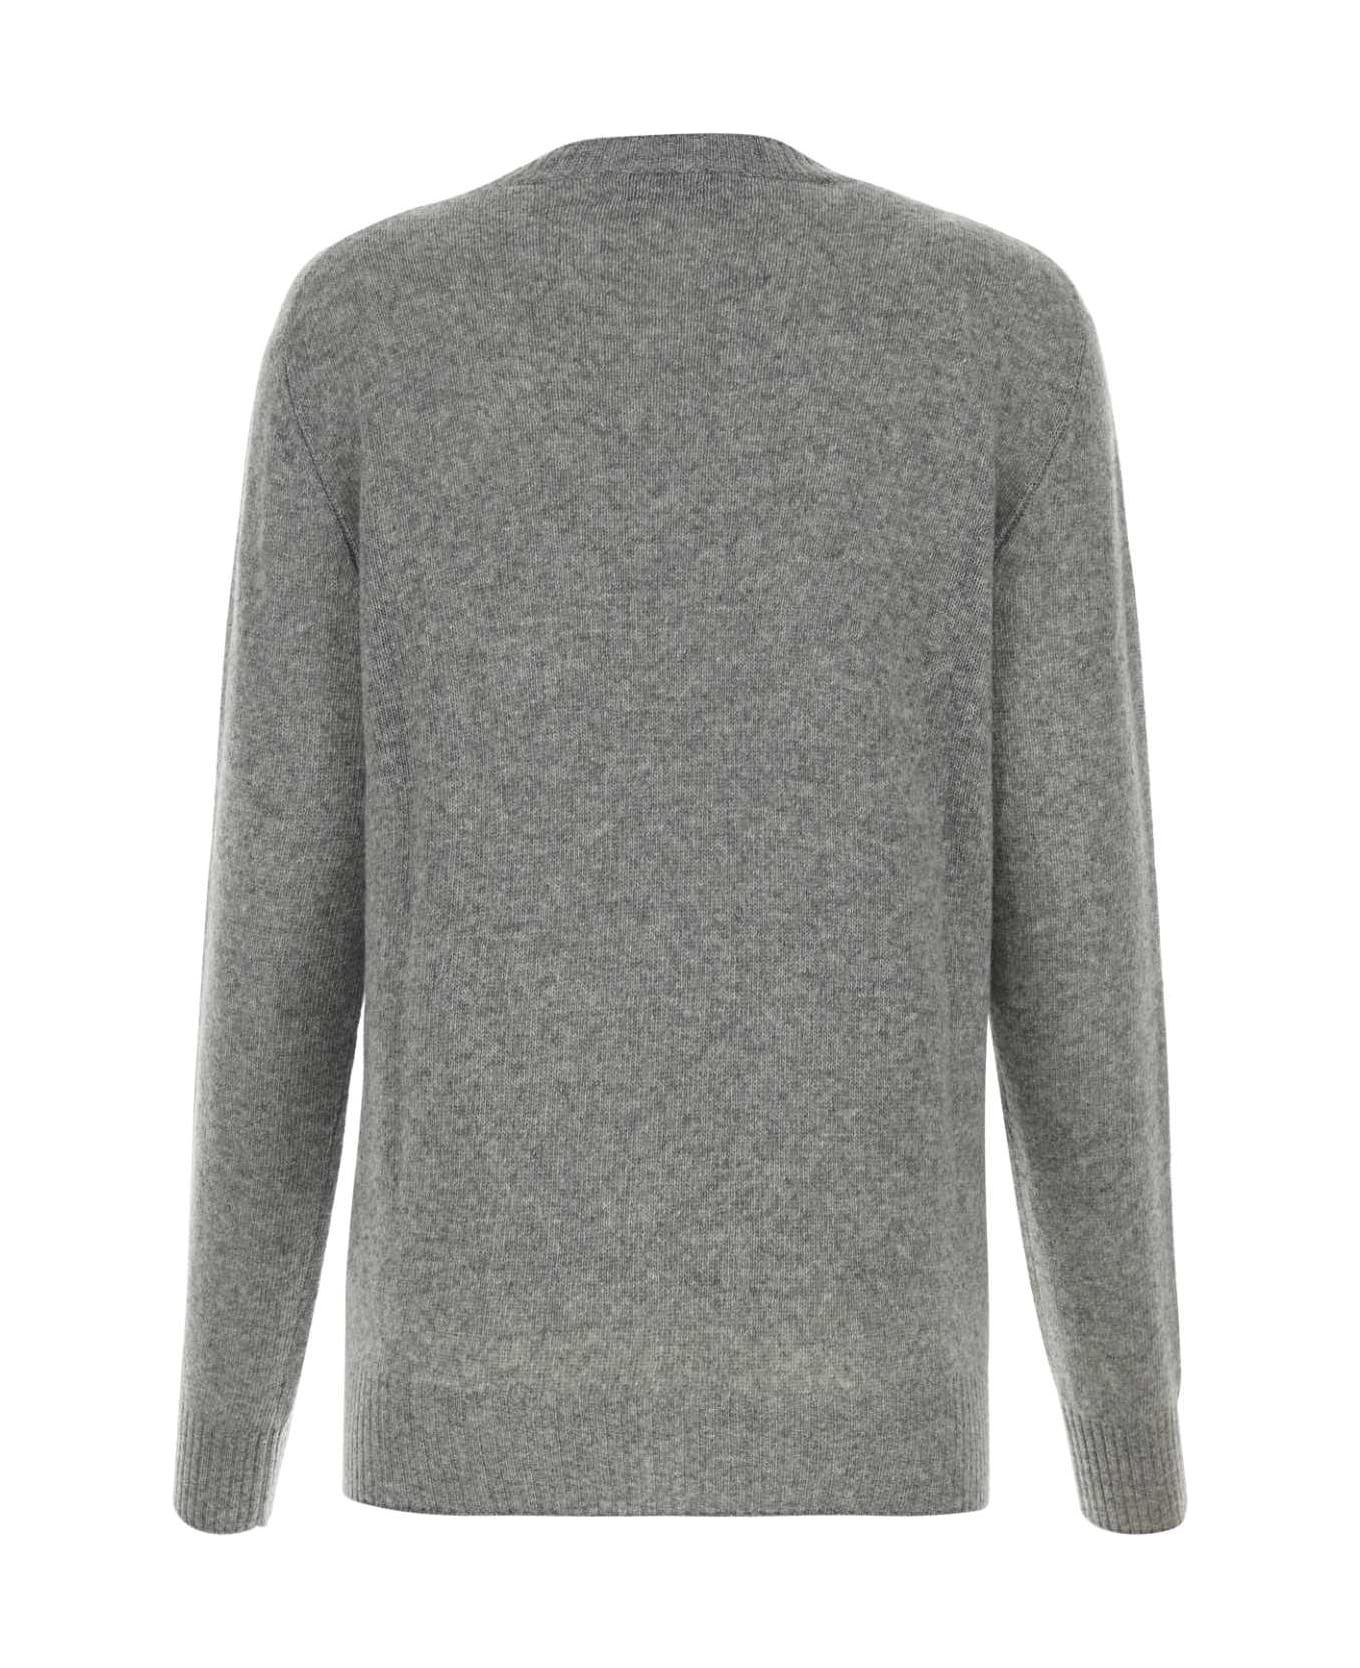 Miu Miu Melange Grey Wool Blend Sweater - GRIGIO